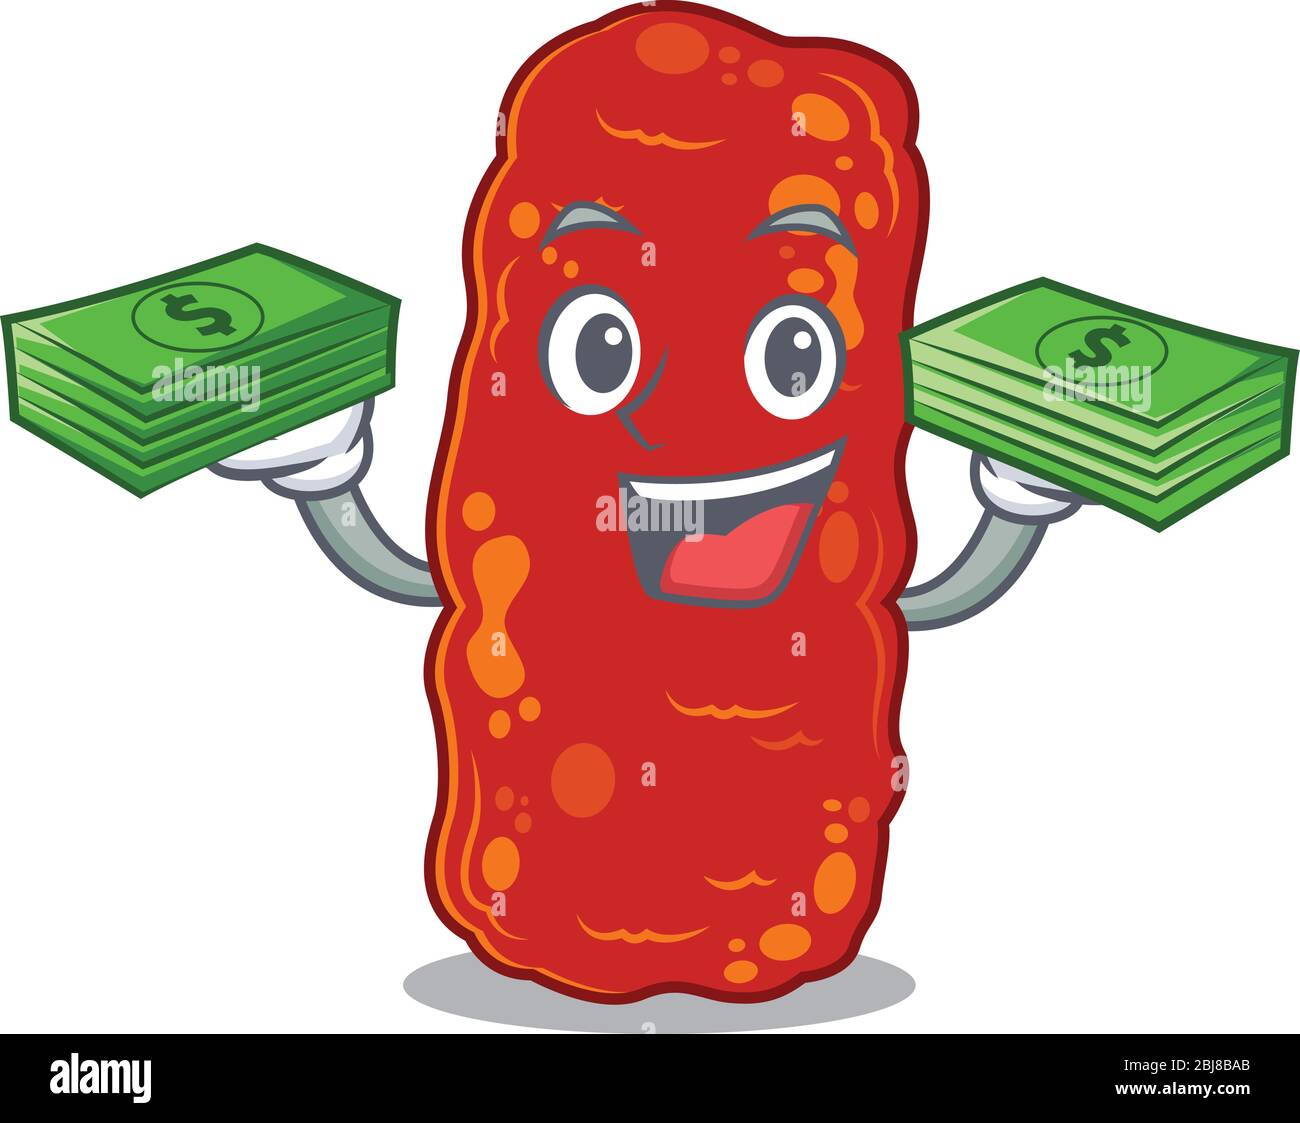 A wealthy acinetobacter bacteria cartoon character having money on hands Stock Vector